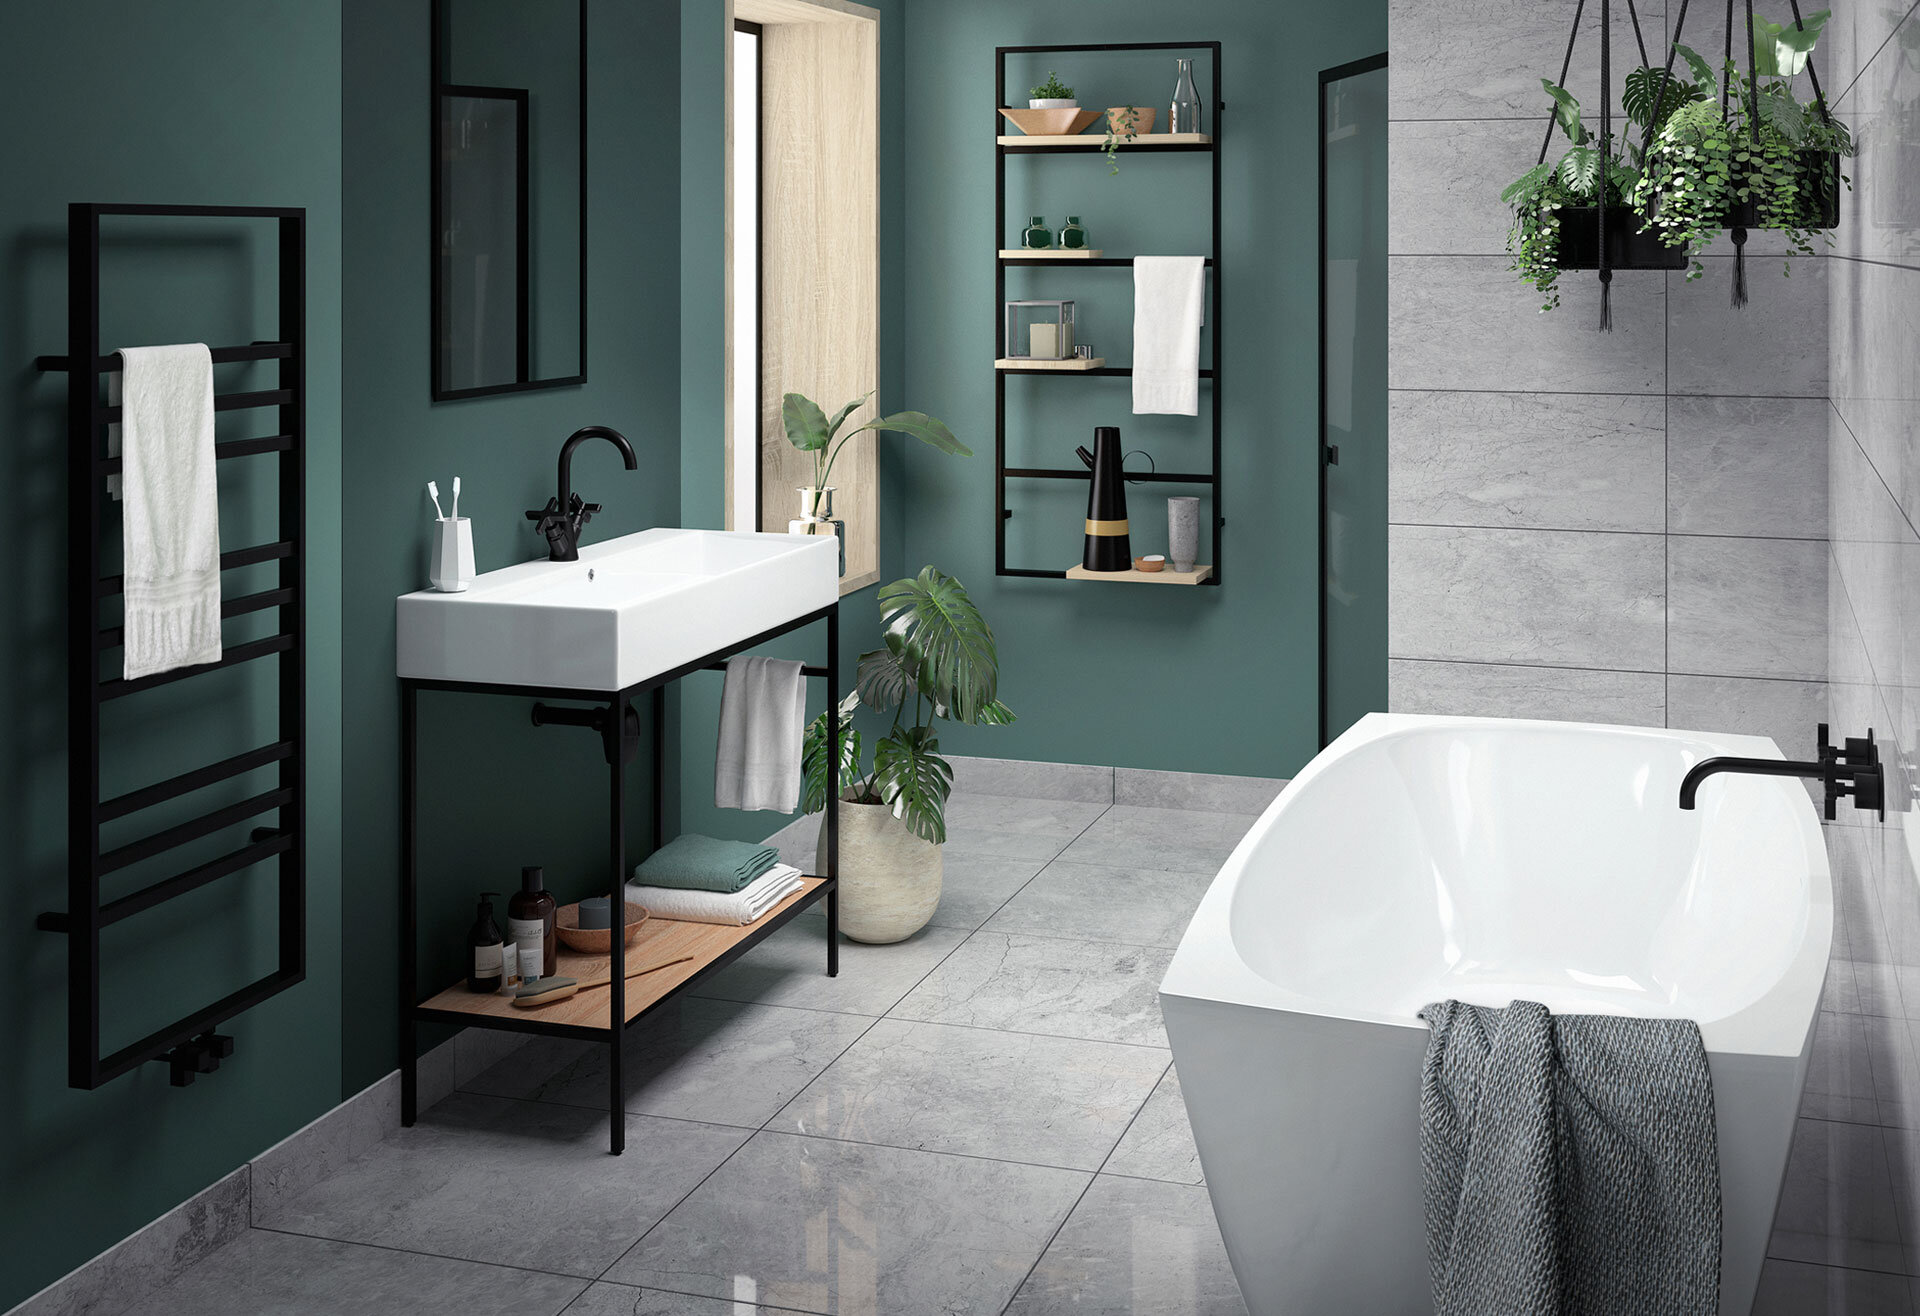 WK360-CGI-Bathroom-Urban-modern-bath-with-black-accessories.jpg